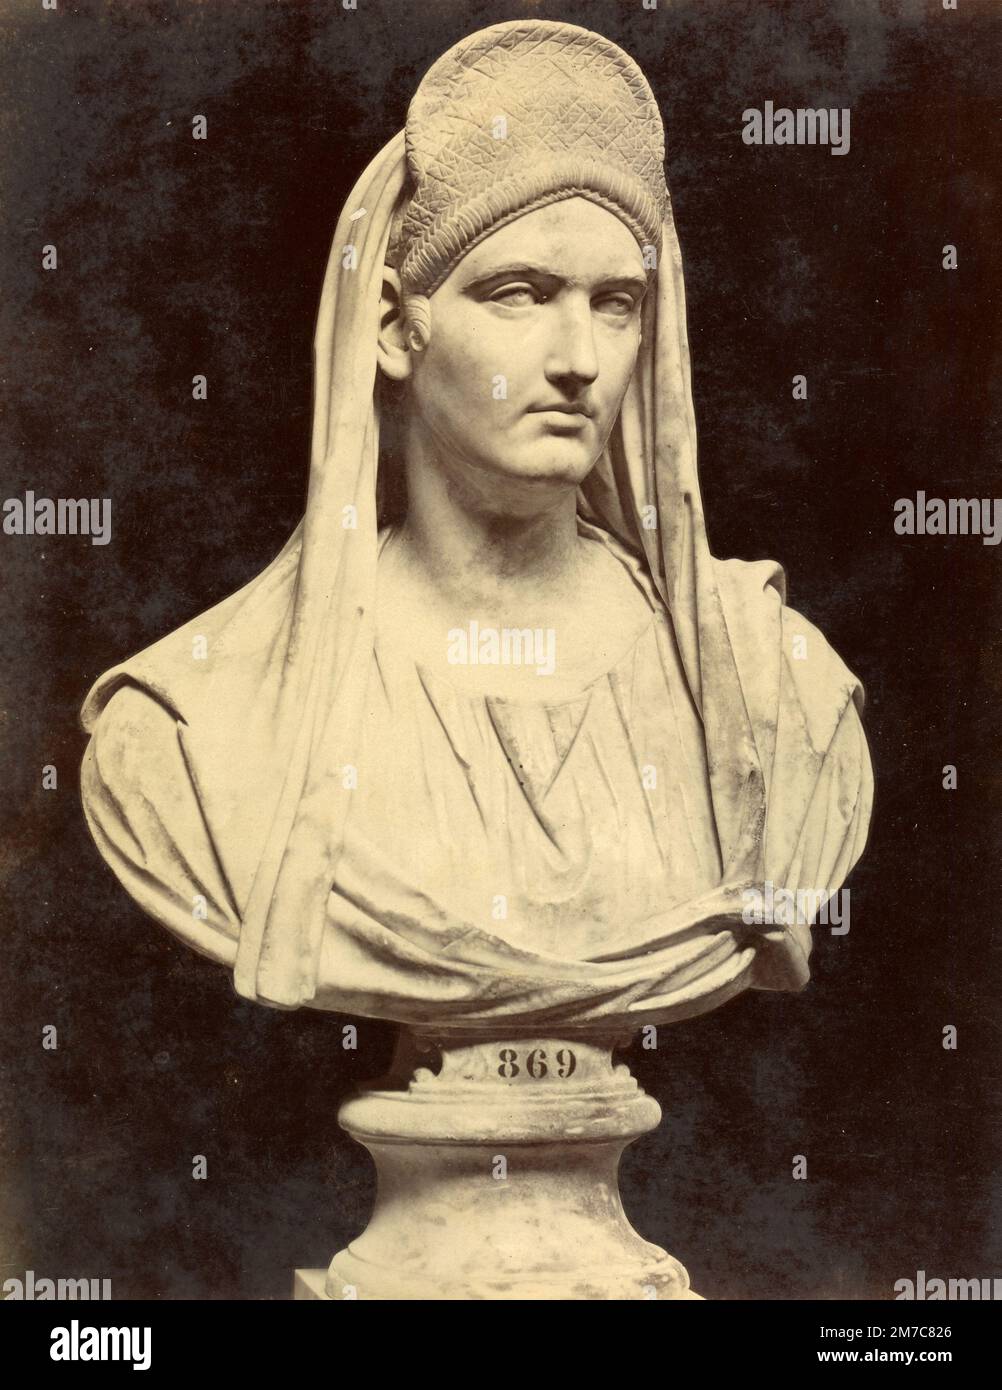 Faustina il Vecchio, moglie dell'imperatore romano Antonino Pio busto di marmo, scultura romana, stampa albumena, 1870s Foto Stock